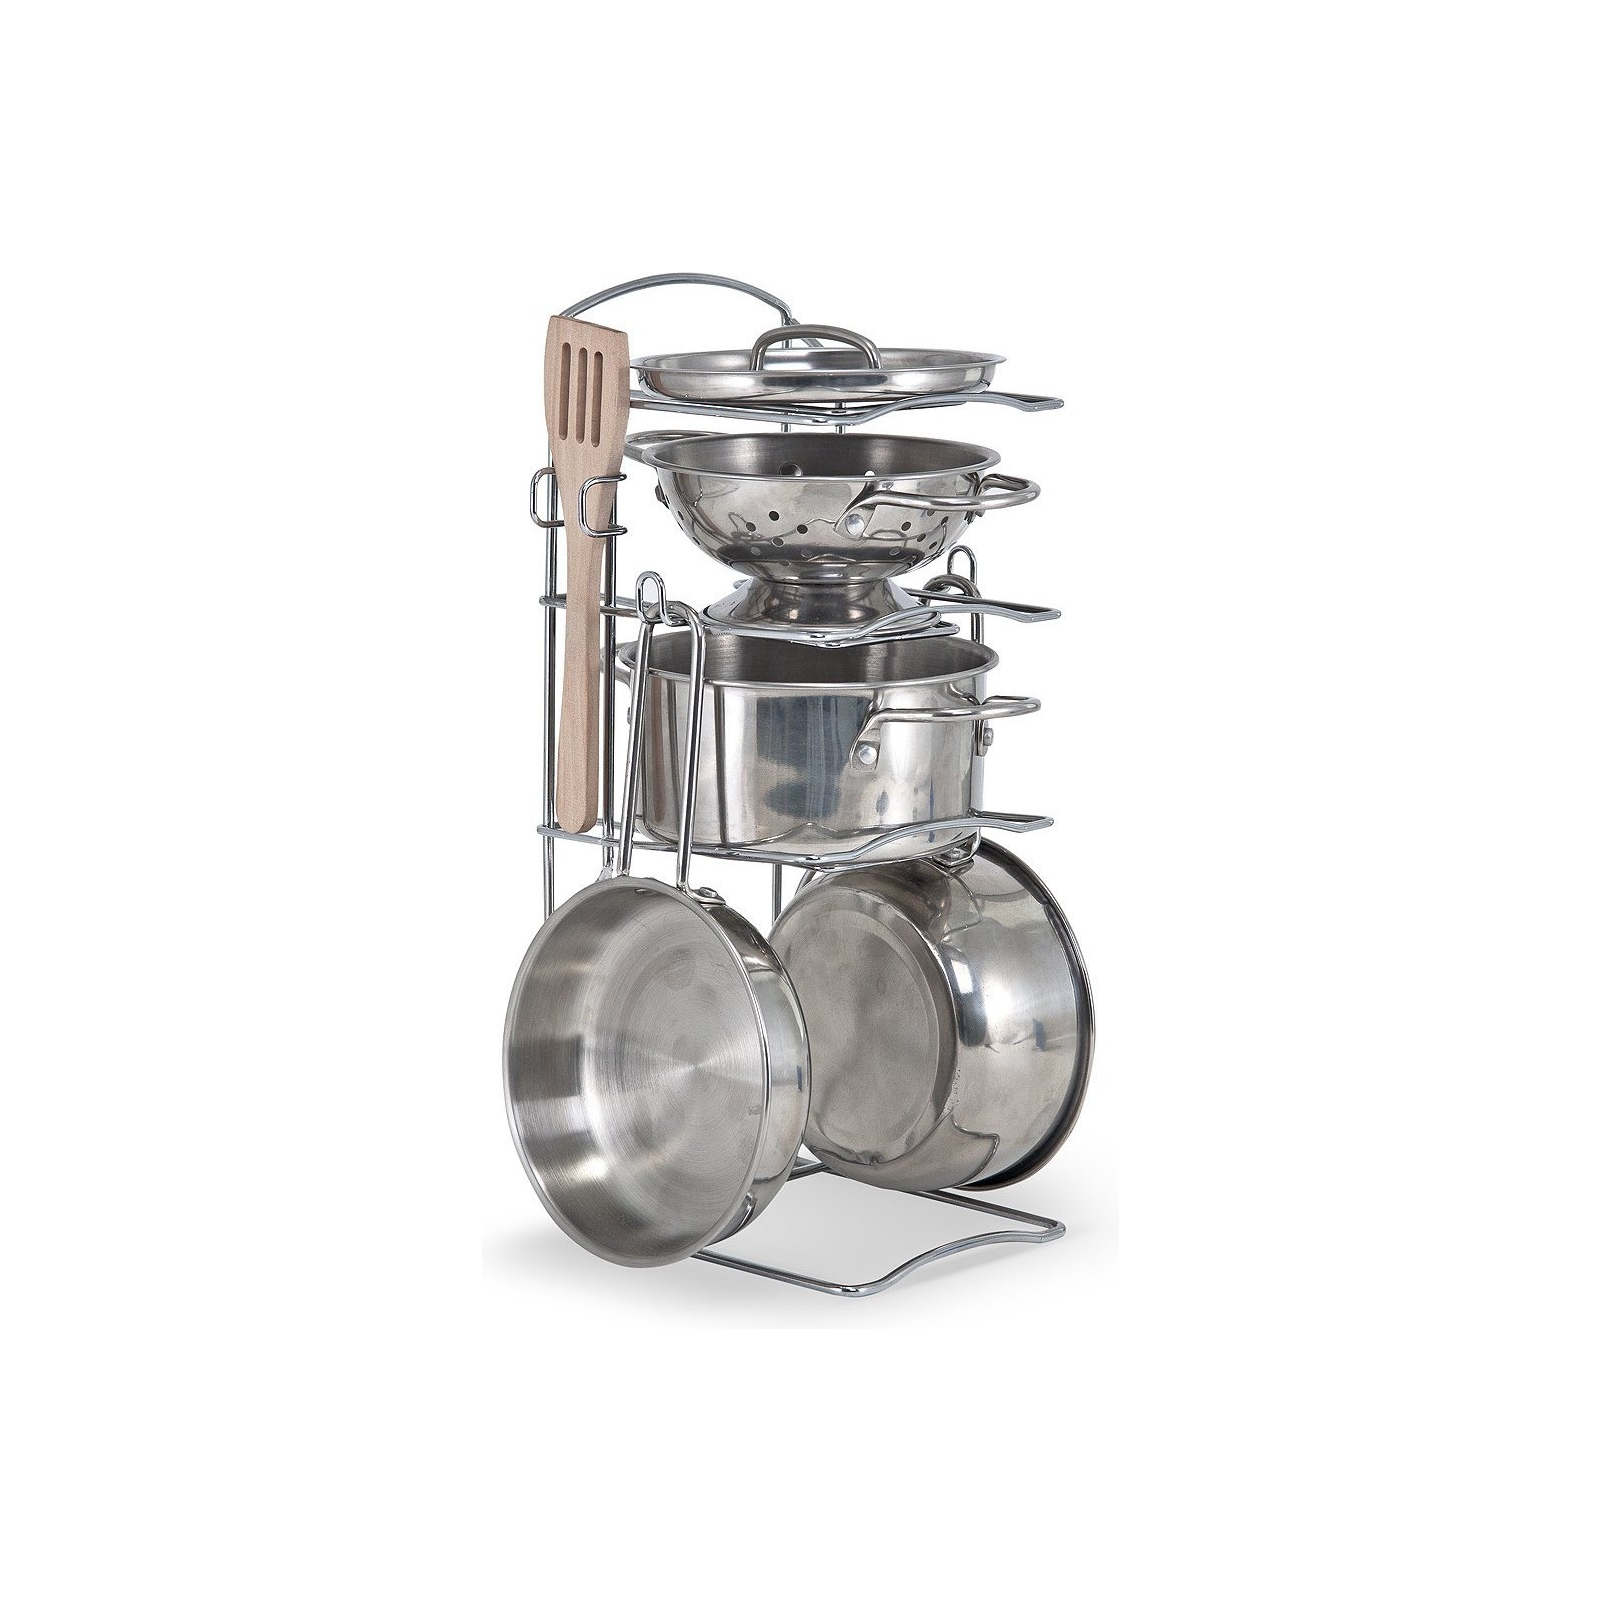 Игровой набор Melissa&Doug Pots & Pans Set посуда из нержавеющей стали (MD14265)